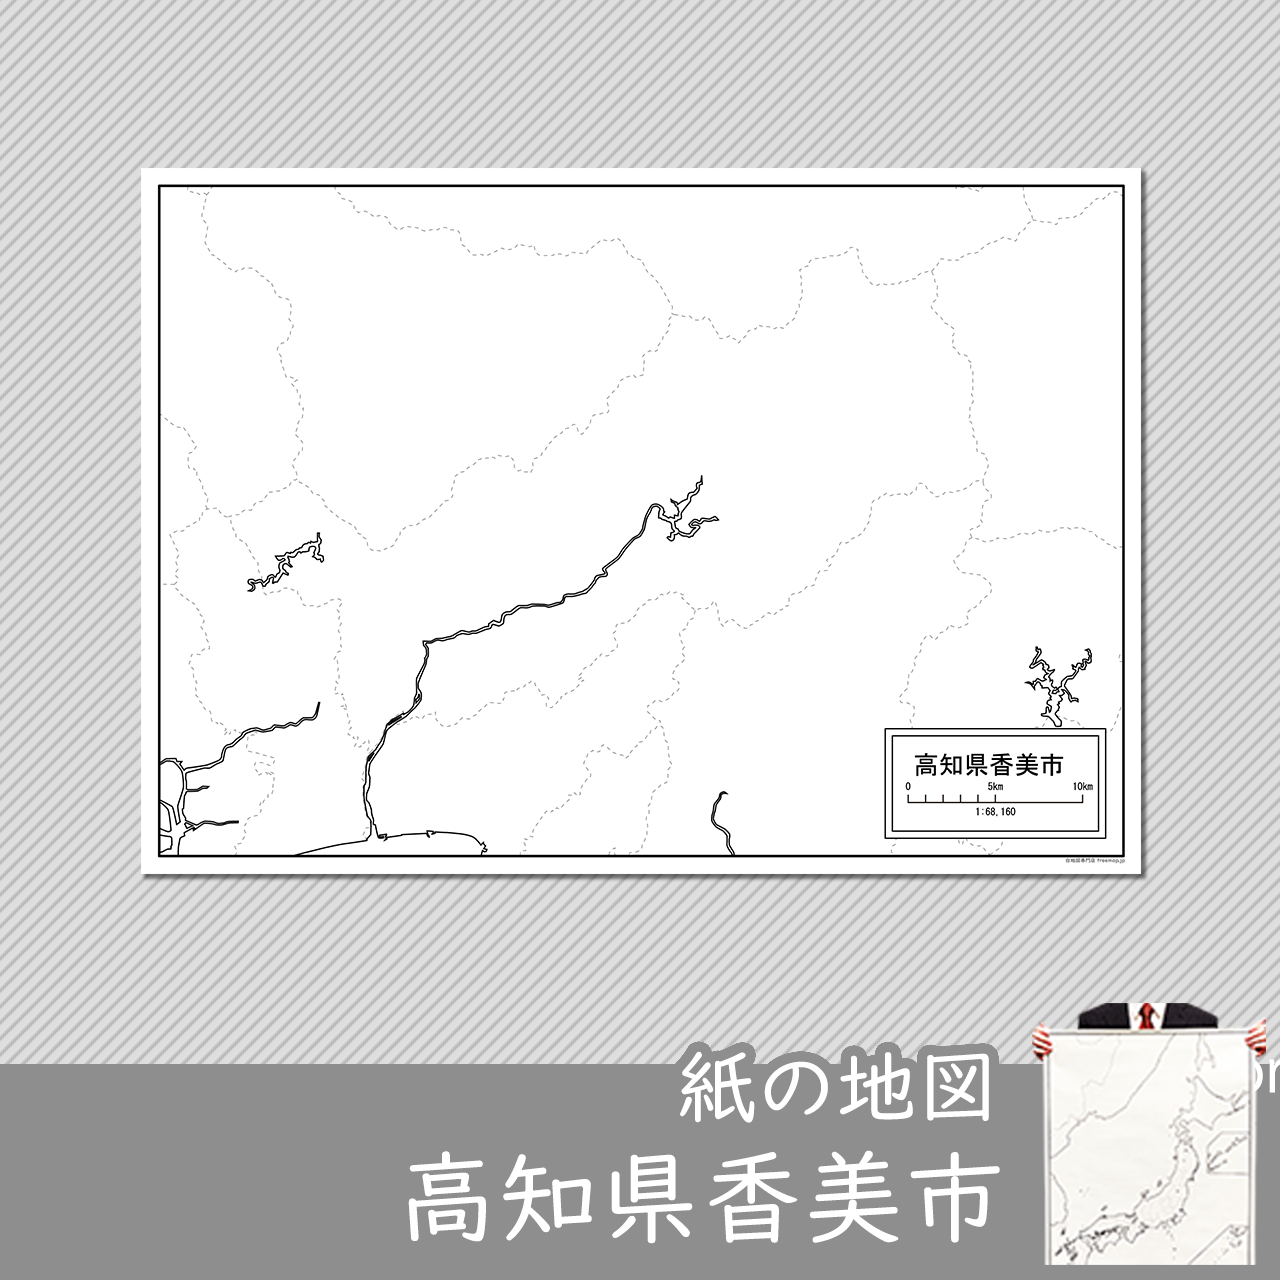 香美市の紙の白地図のサムネイル